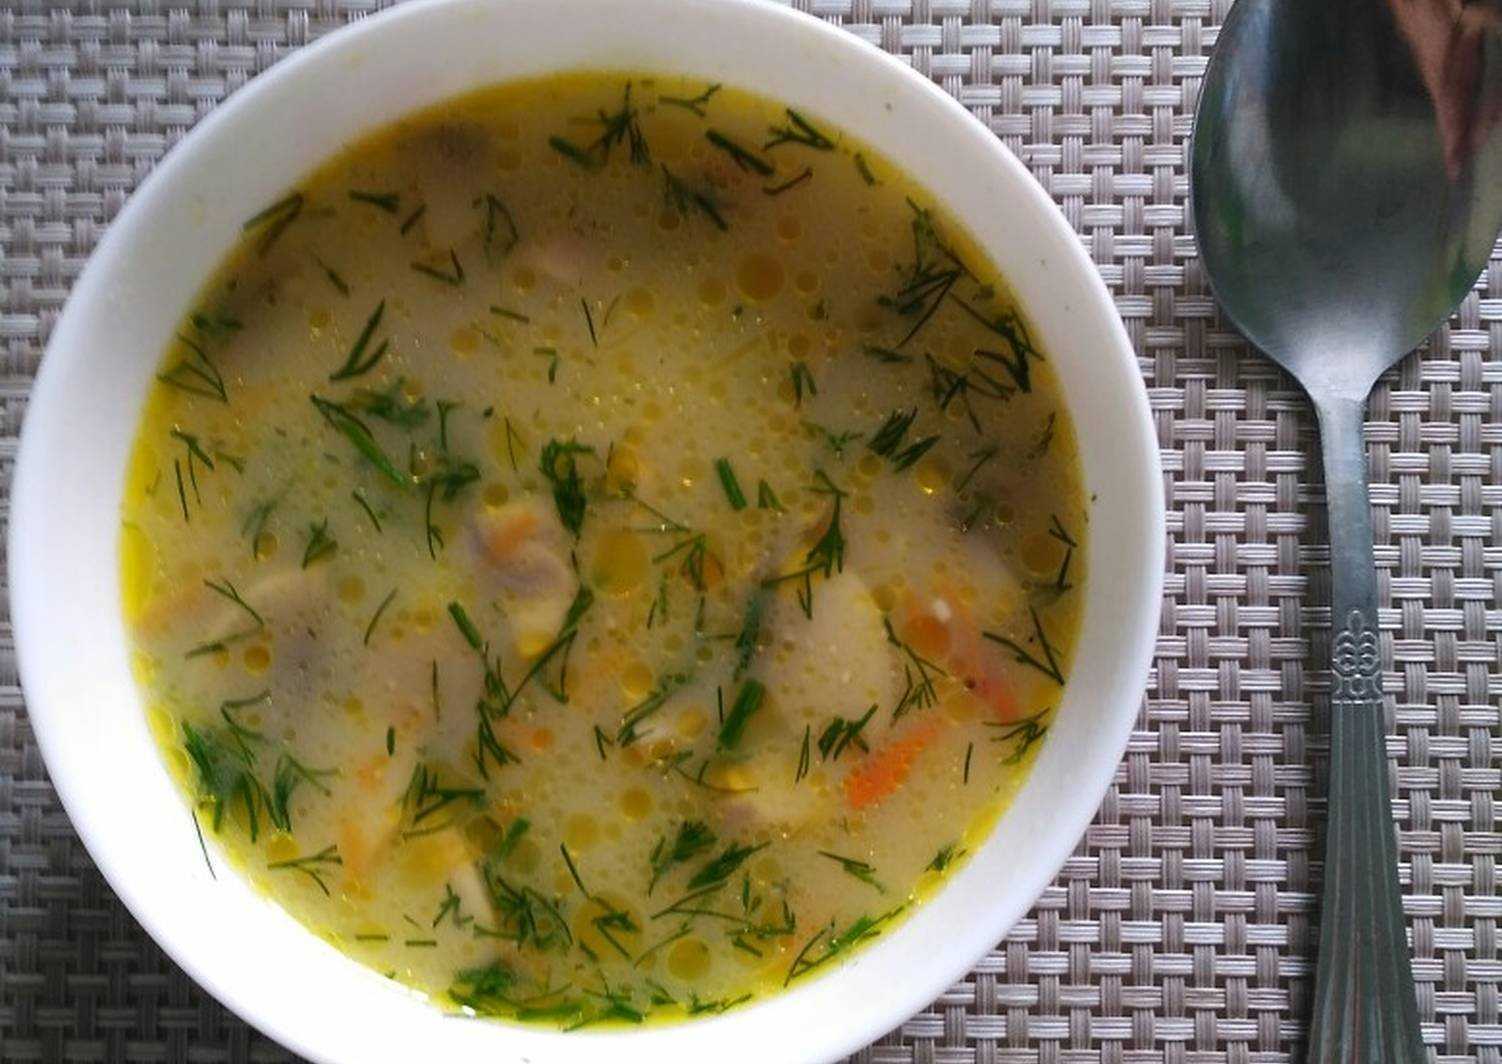 Суп с шампиньонами и картофелем и сыром плавленным рецепт фото пошагово